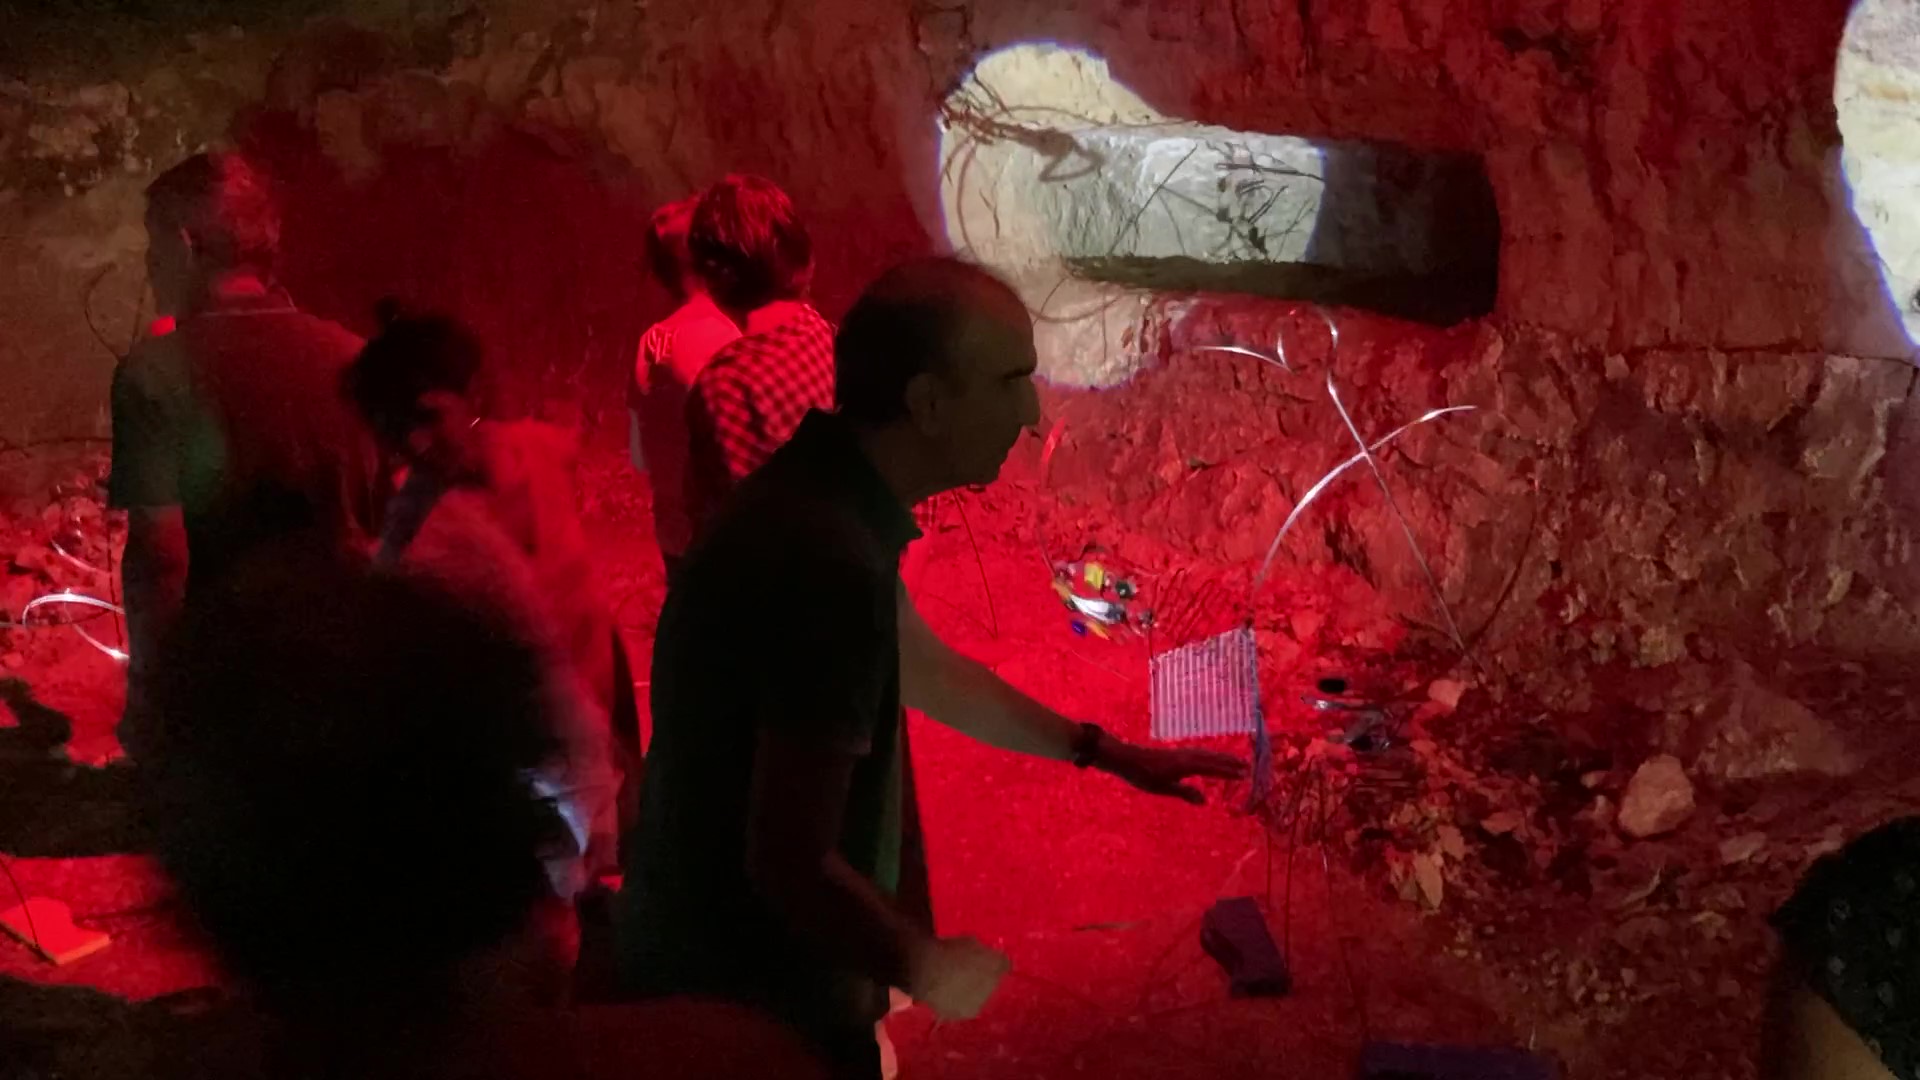 Visite d'une oeuvre d'art en volume exposée dans une grotte troglodyte. Les participants se déplacent dans l'habitat et font bouger, en les touchant, des personnages faits de câbles d'acier.